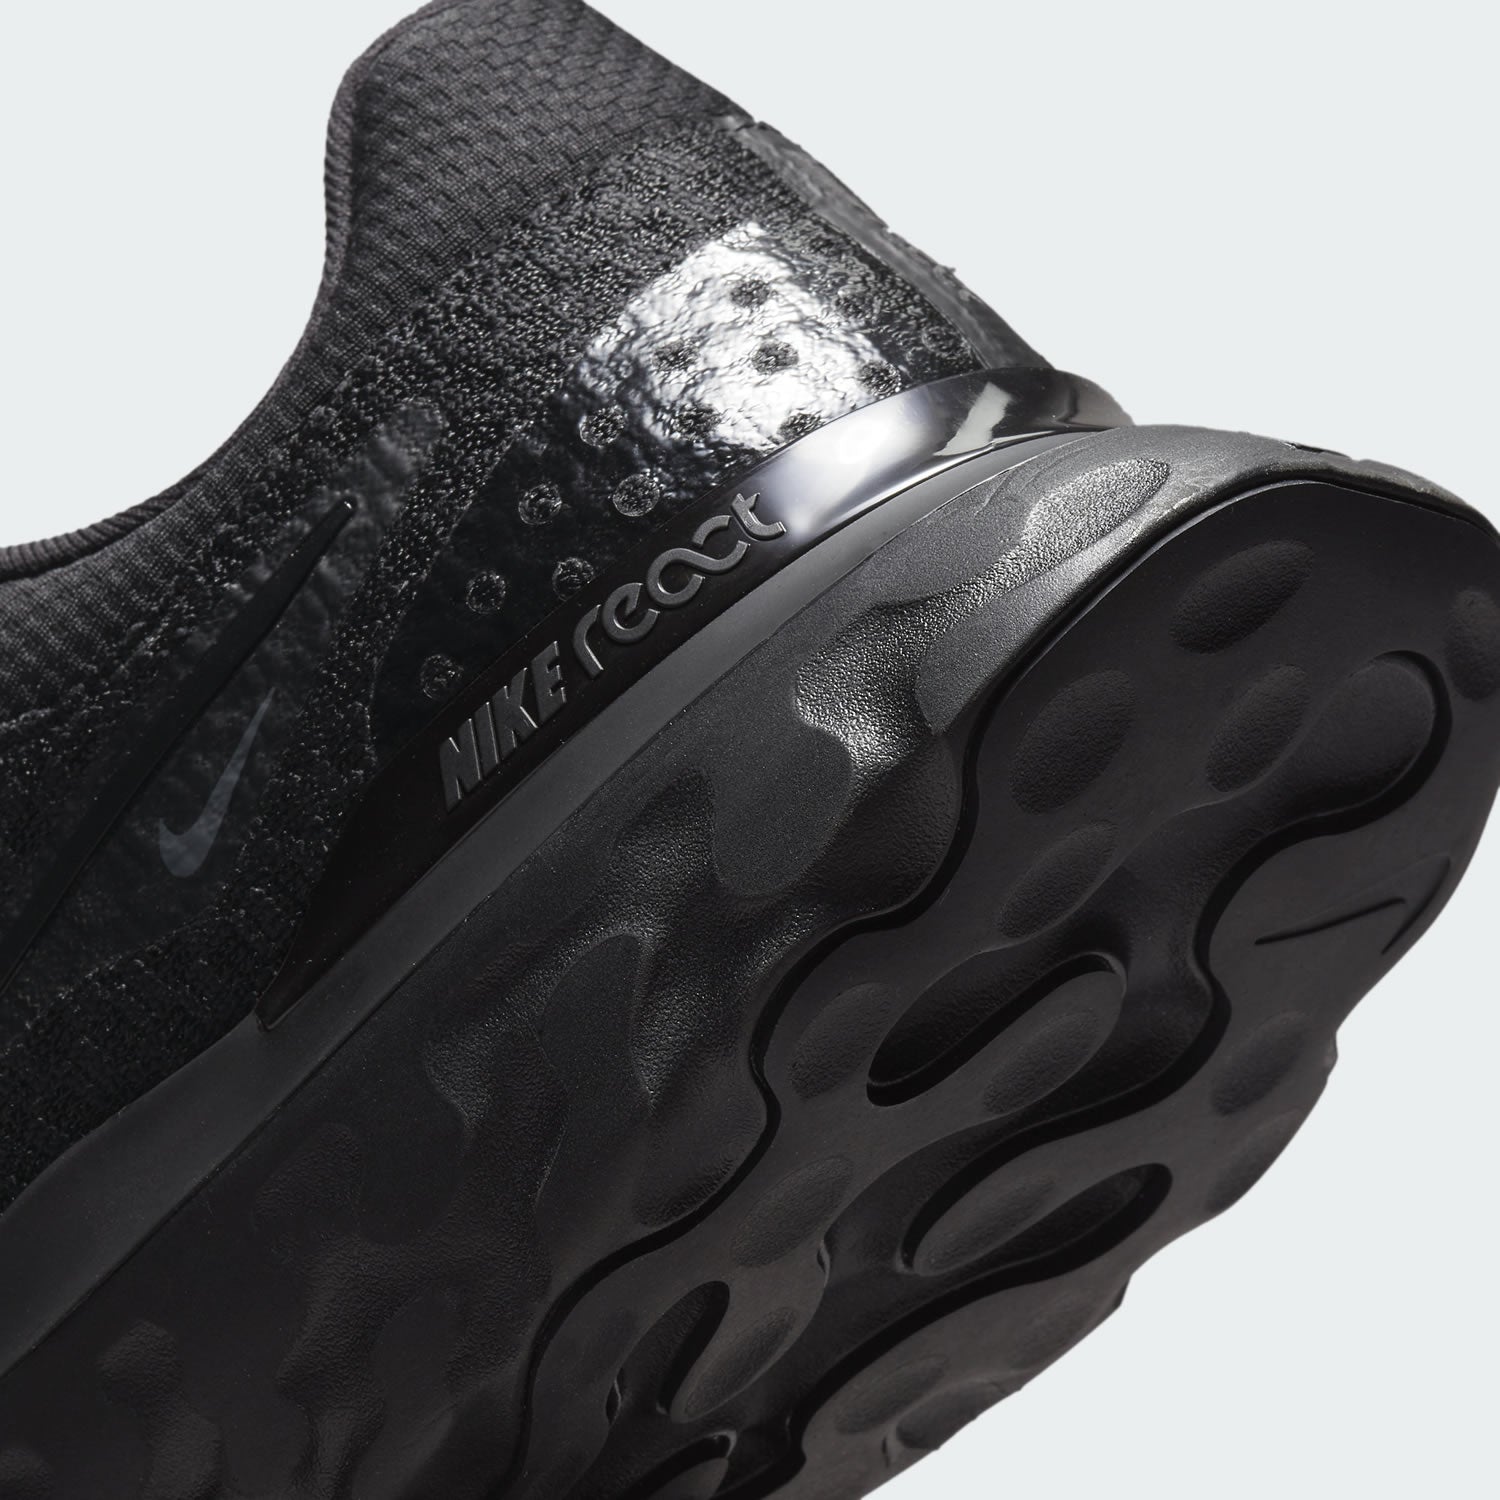 tradesports.co.uk Nike Men's React Infinity Run Flyknit 3 Shoes DH5392 005